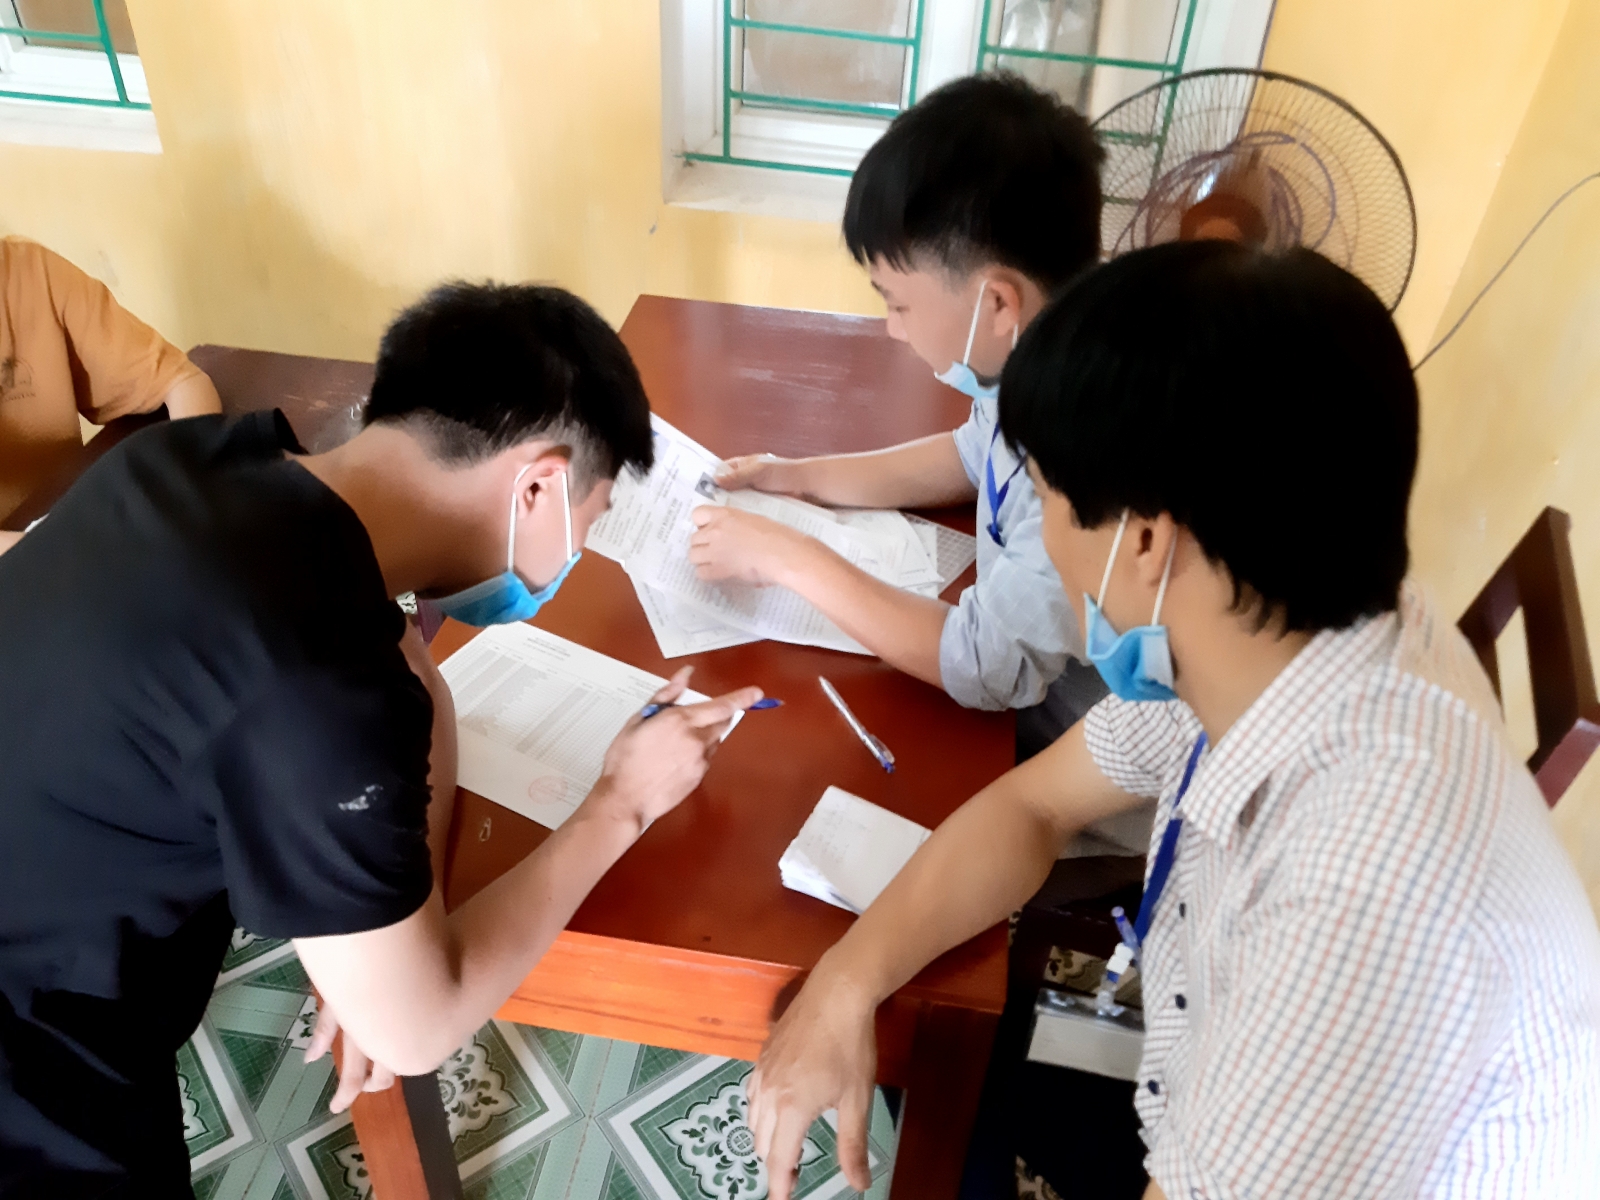 Nam Định: 66 thí sinh vắng mặt tại buổi làm thủ tục thi tốt nghiệp THPT